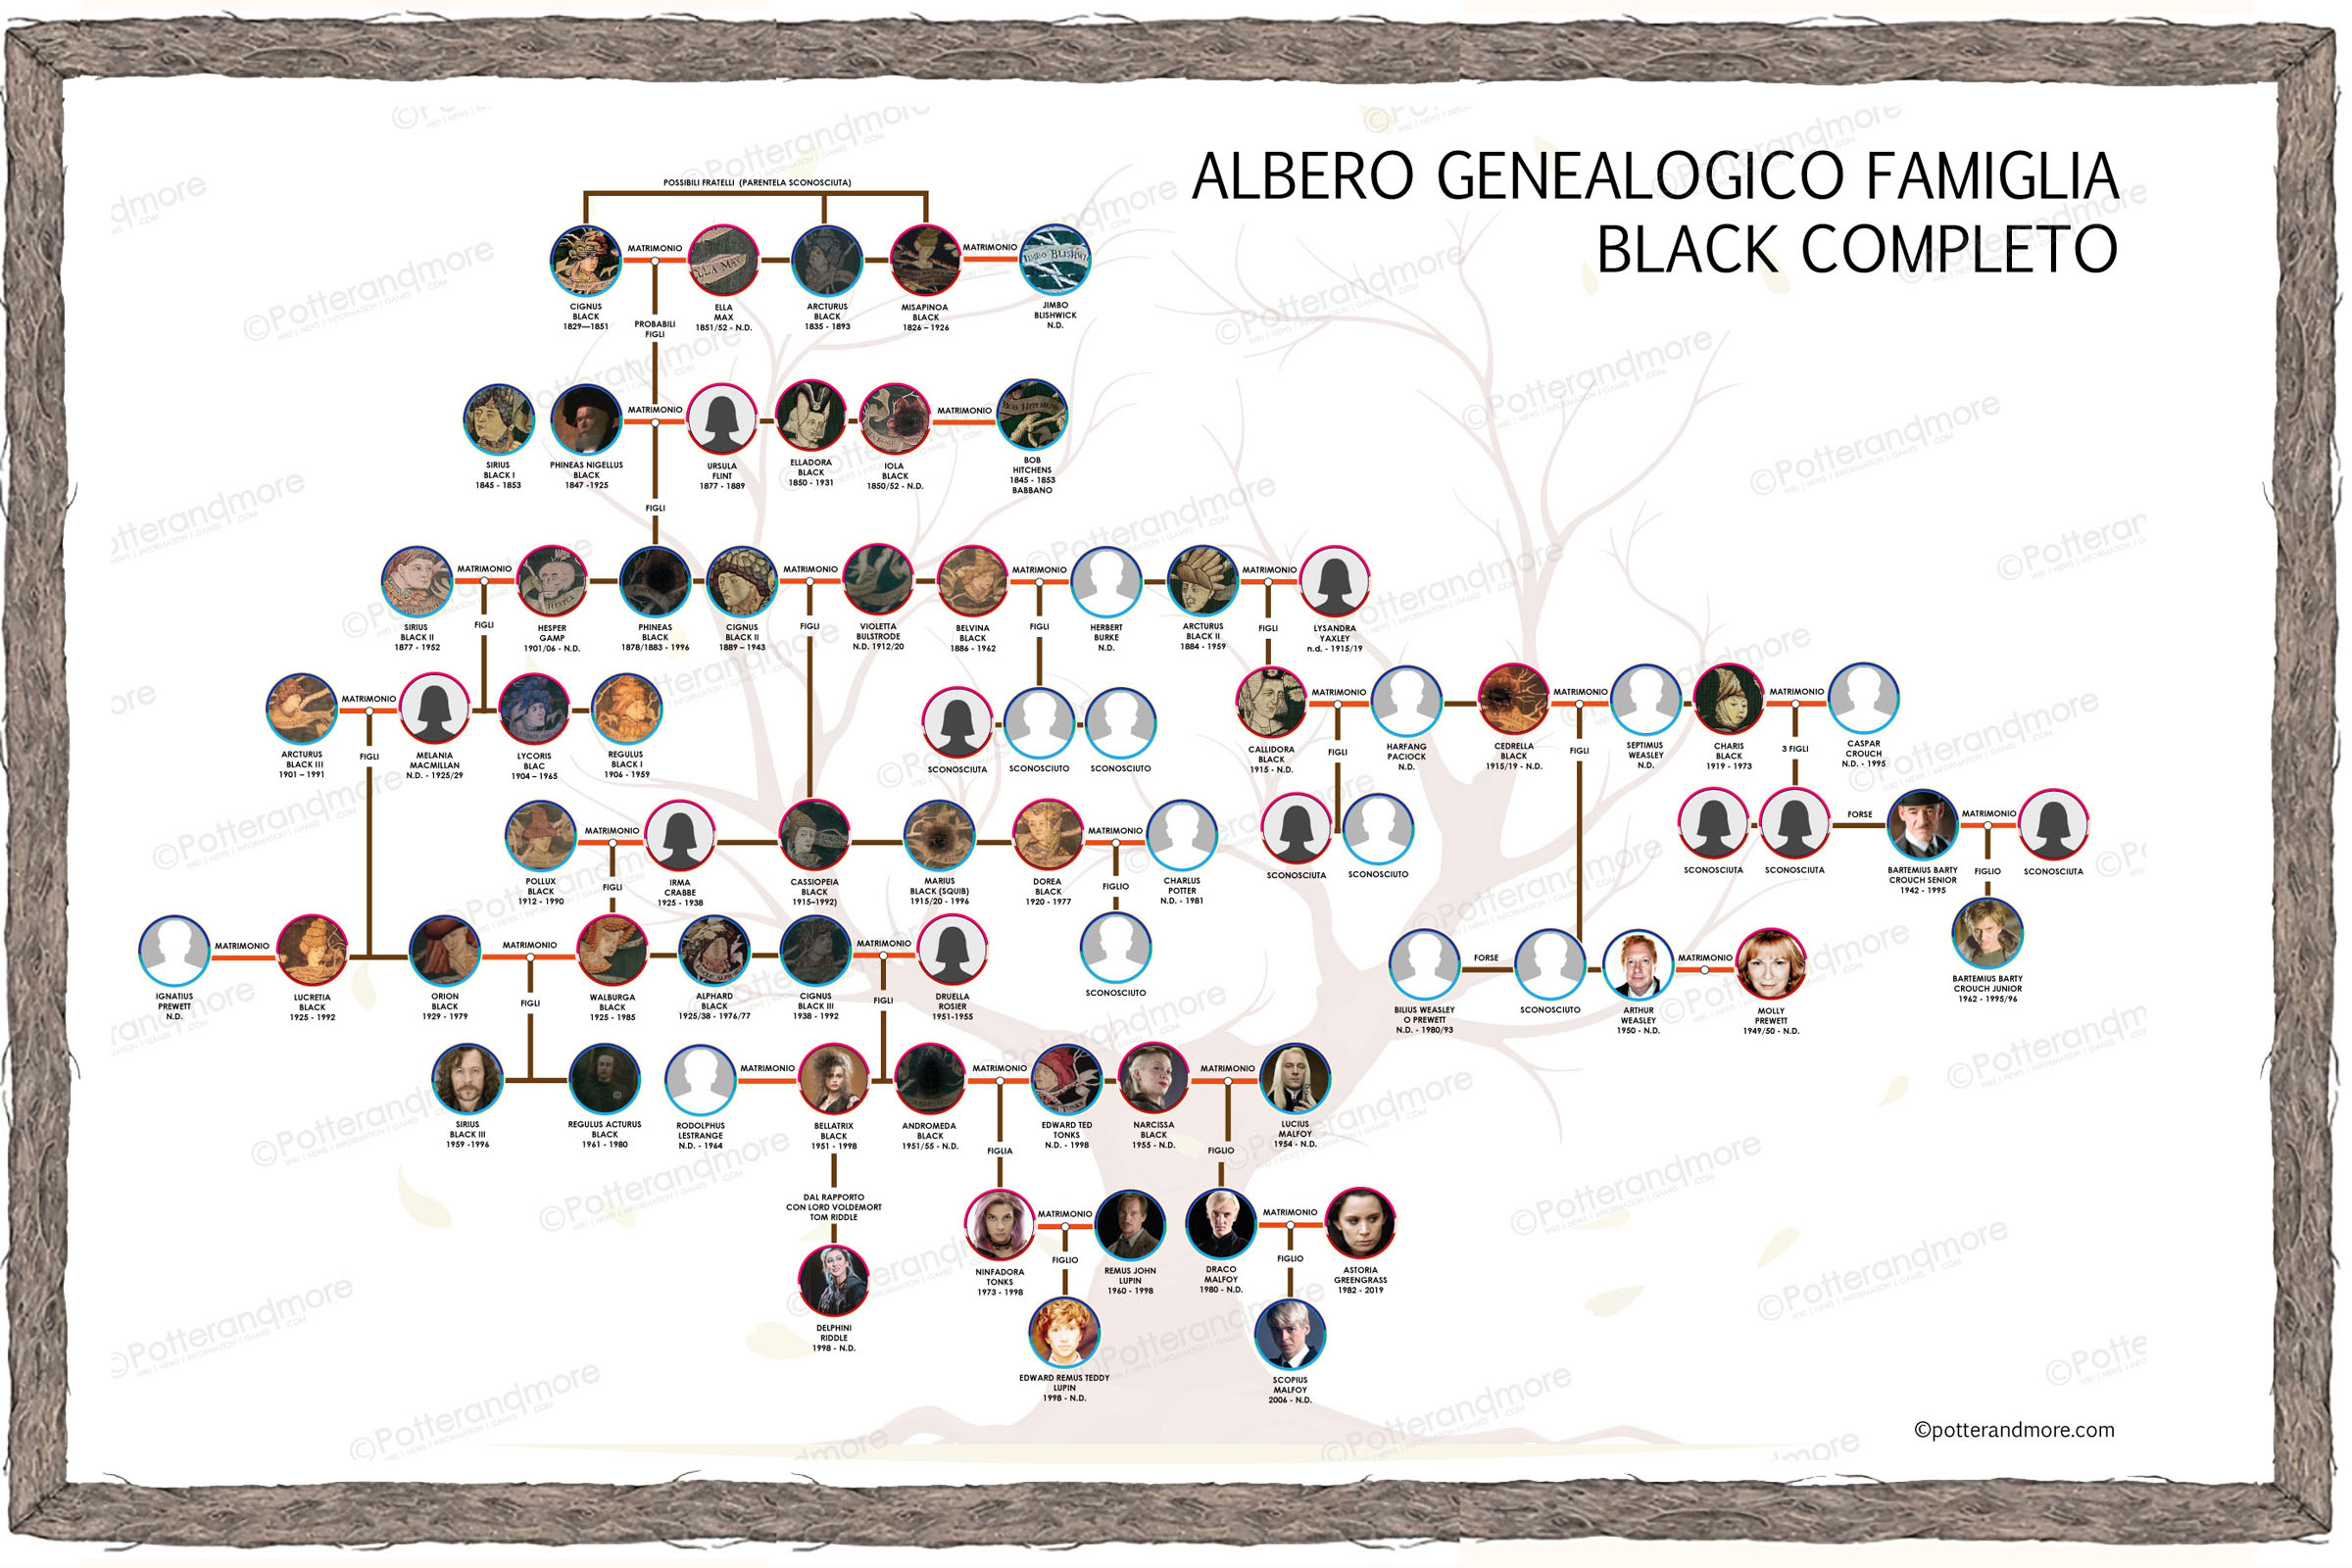 Albero genealogico famiglia Black completo